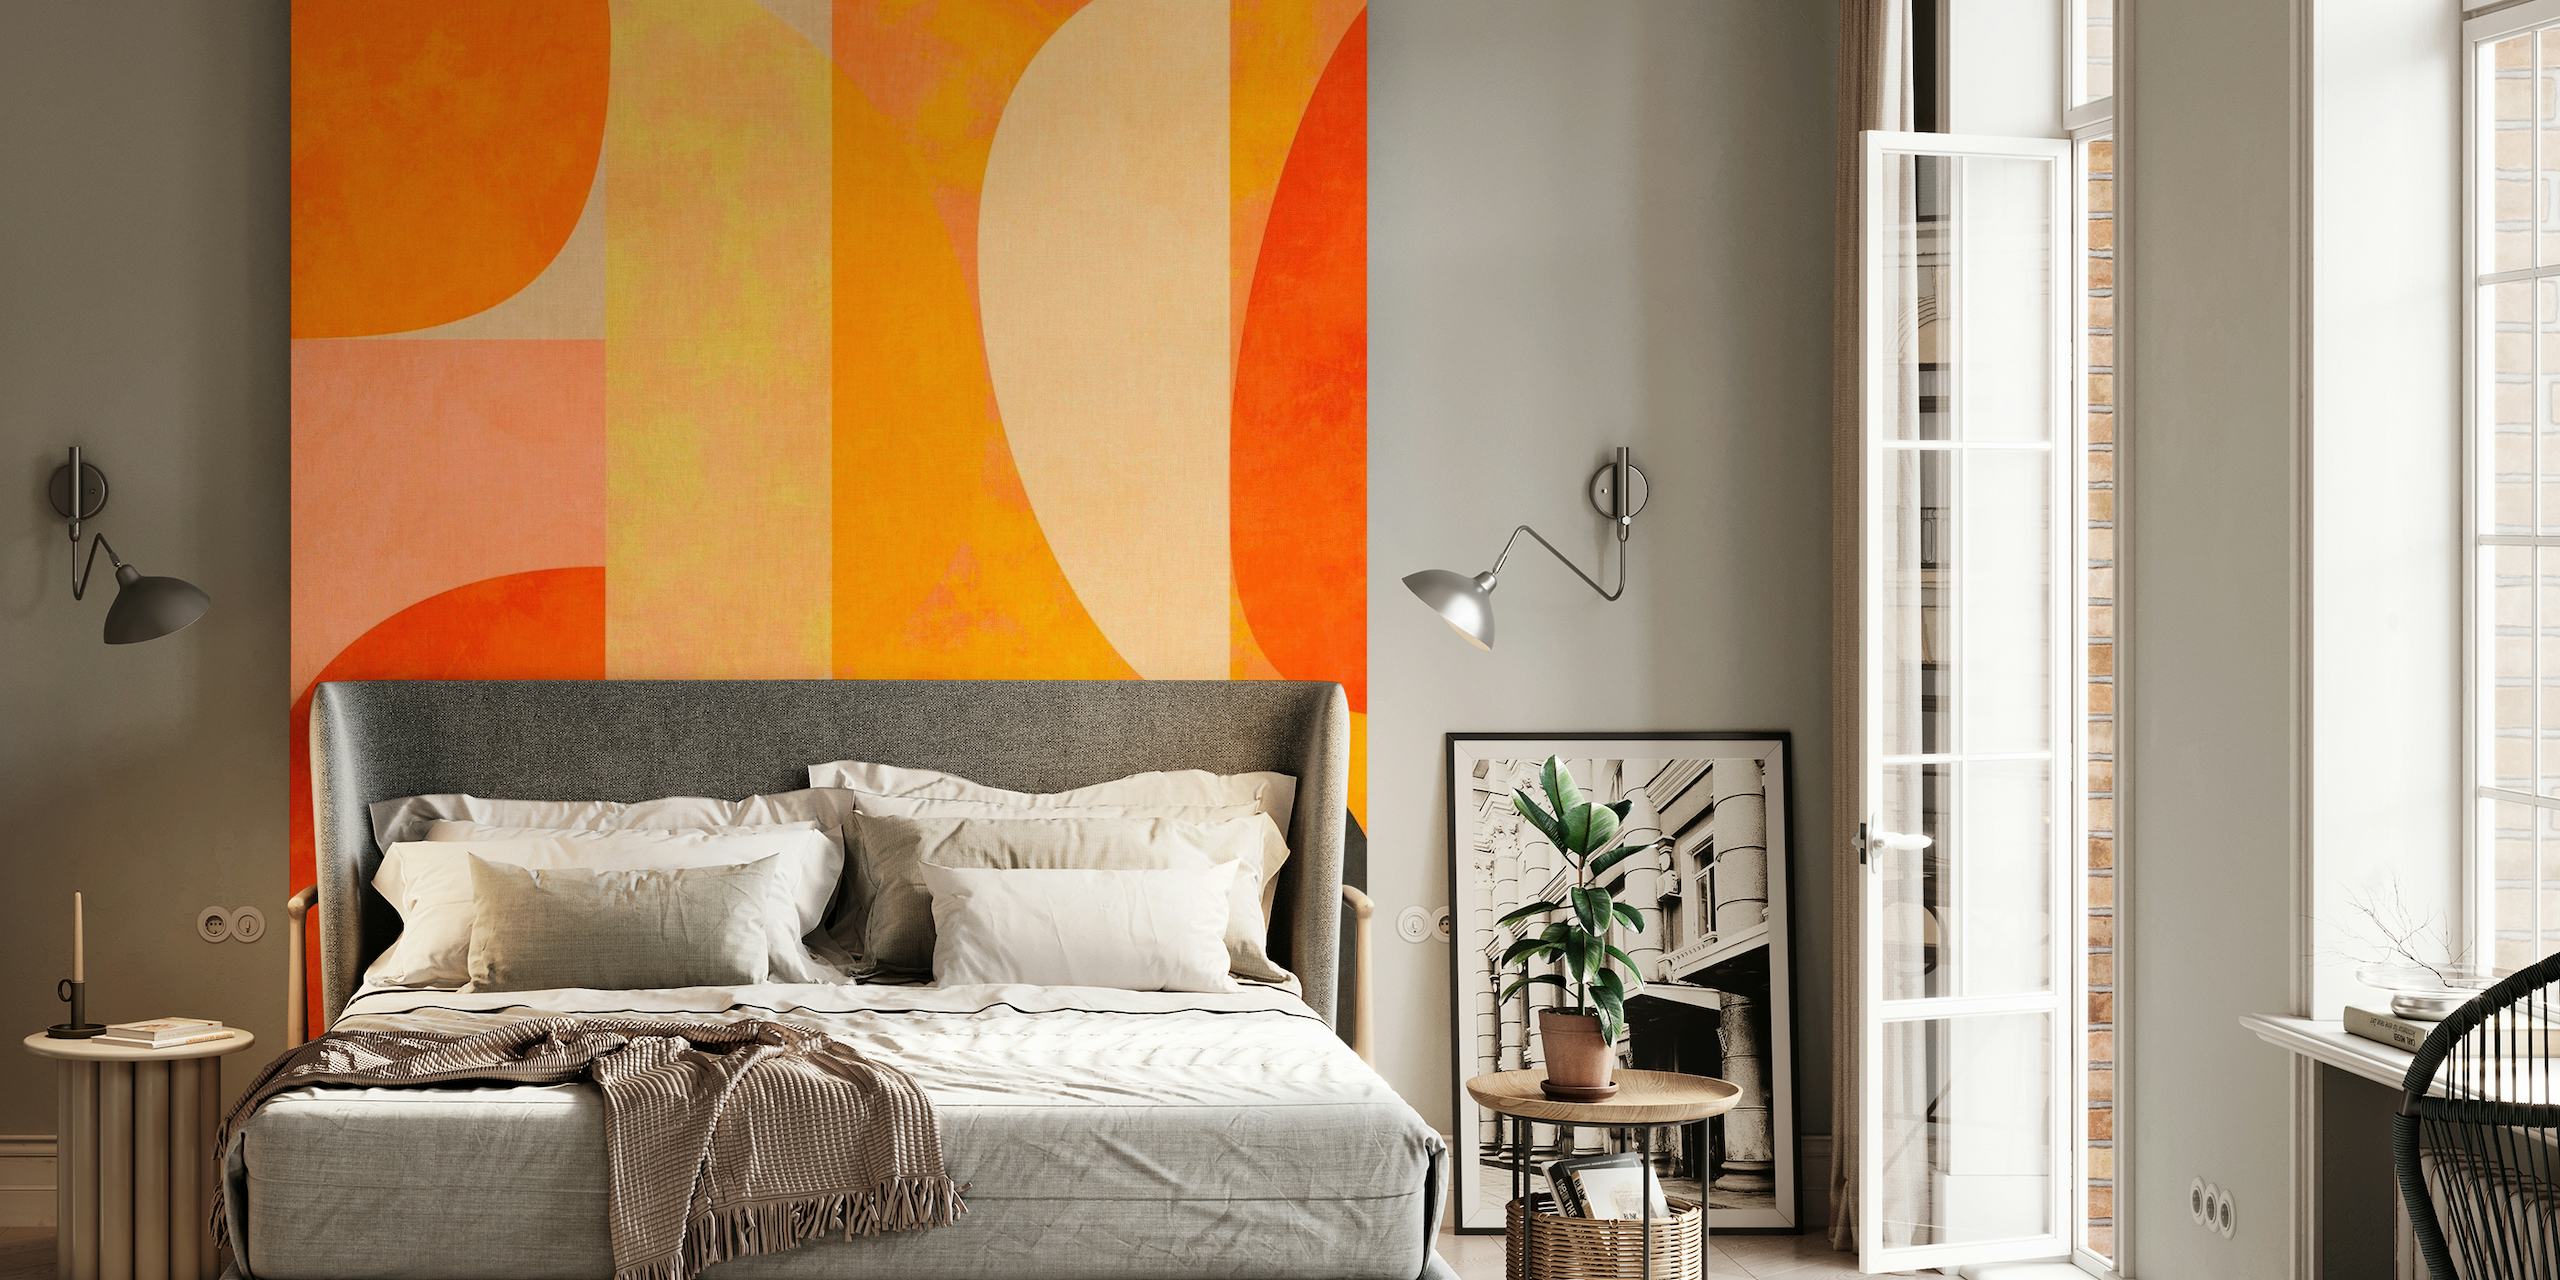 Abstrakta väggmålningar med geometriska former i brända orange, djupröda och jordnära toner med svarta accenter